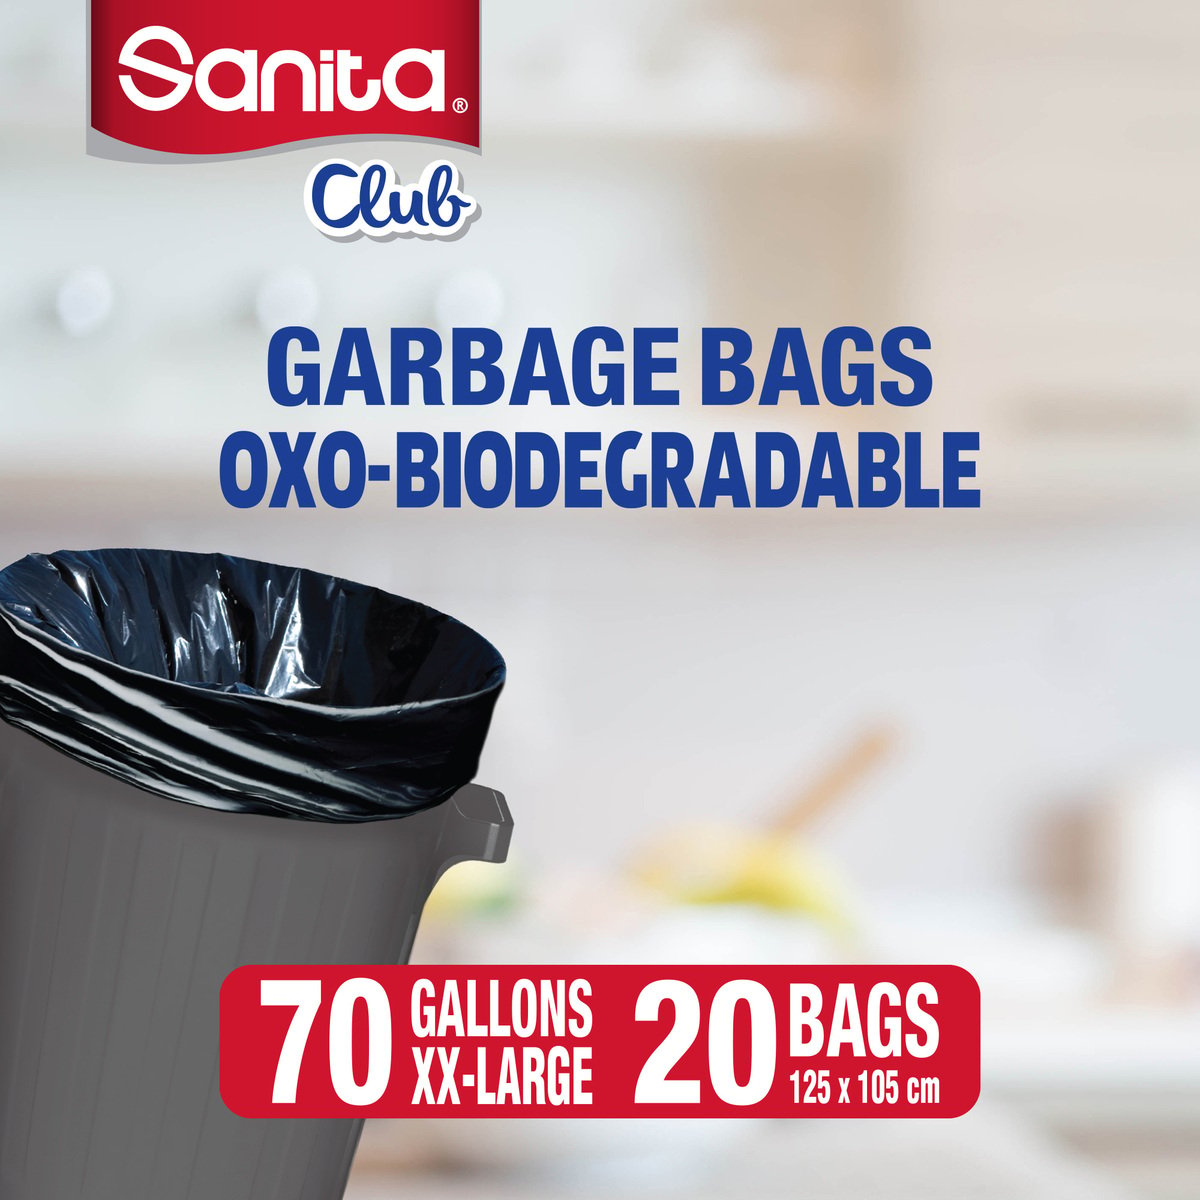 Sanita Club Garbage Bags Oxo-Biodegradable 70 Gallons XX-Large Size 125 x 105cm 2 x 10pcs